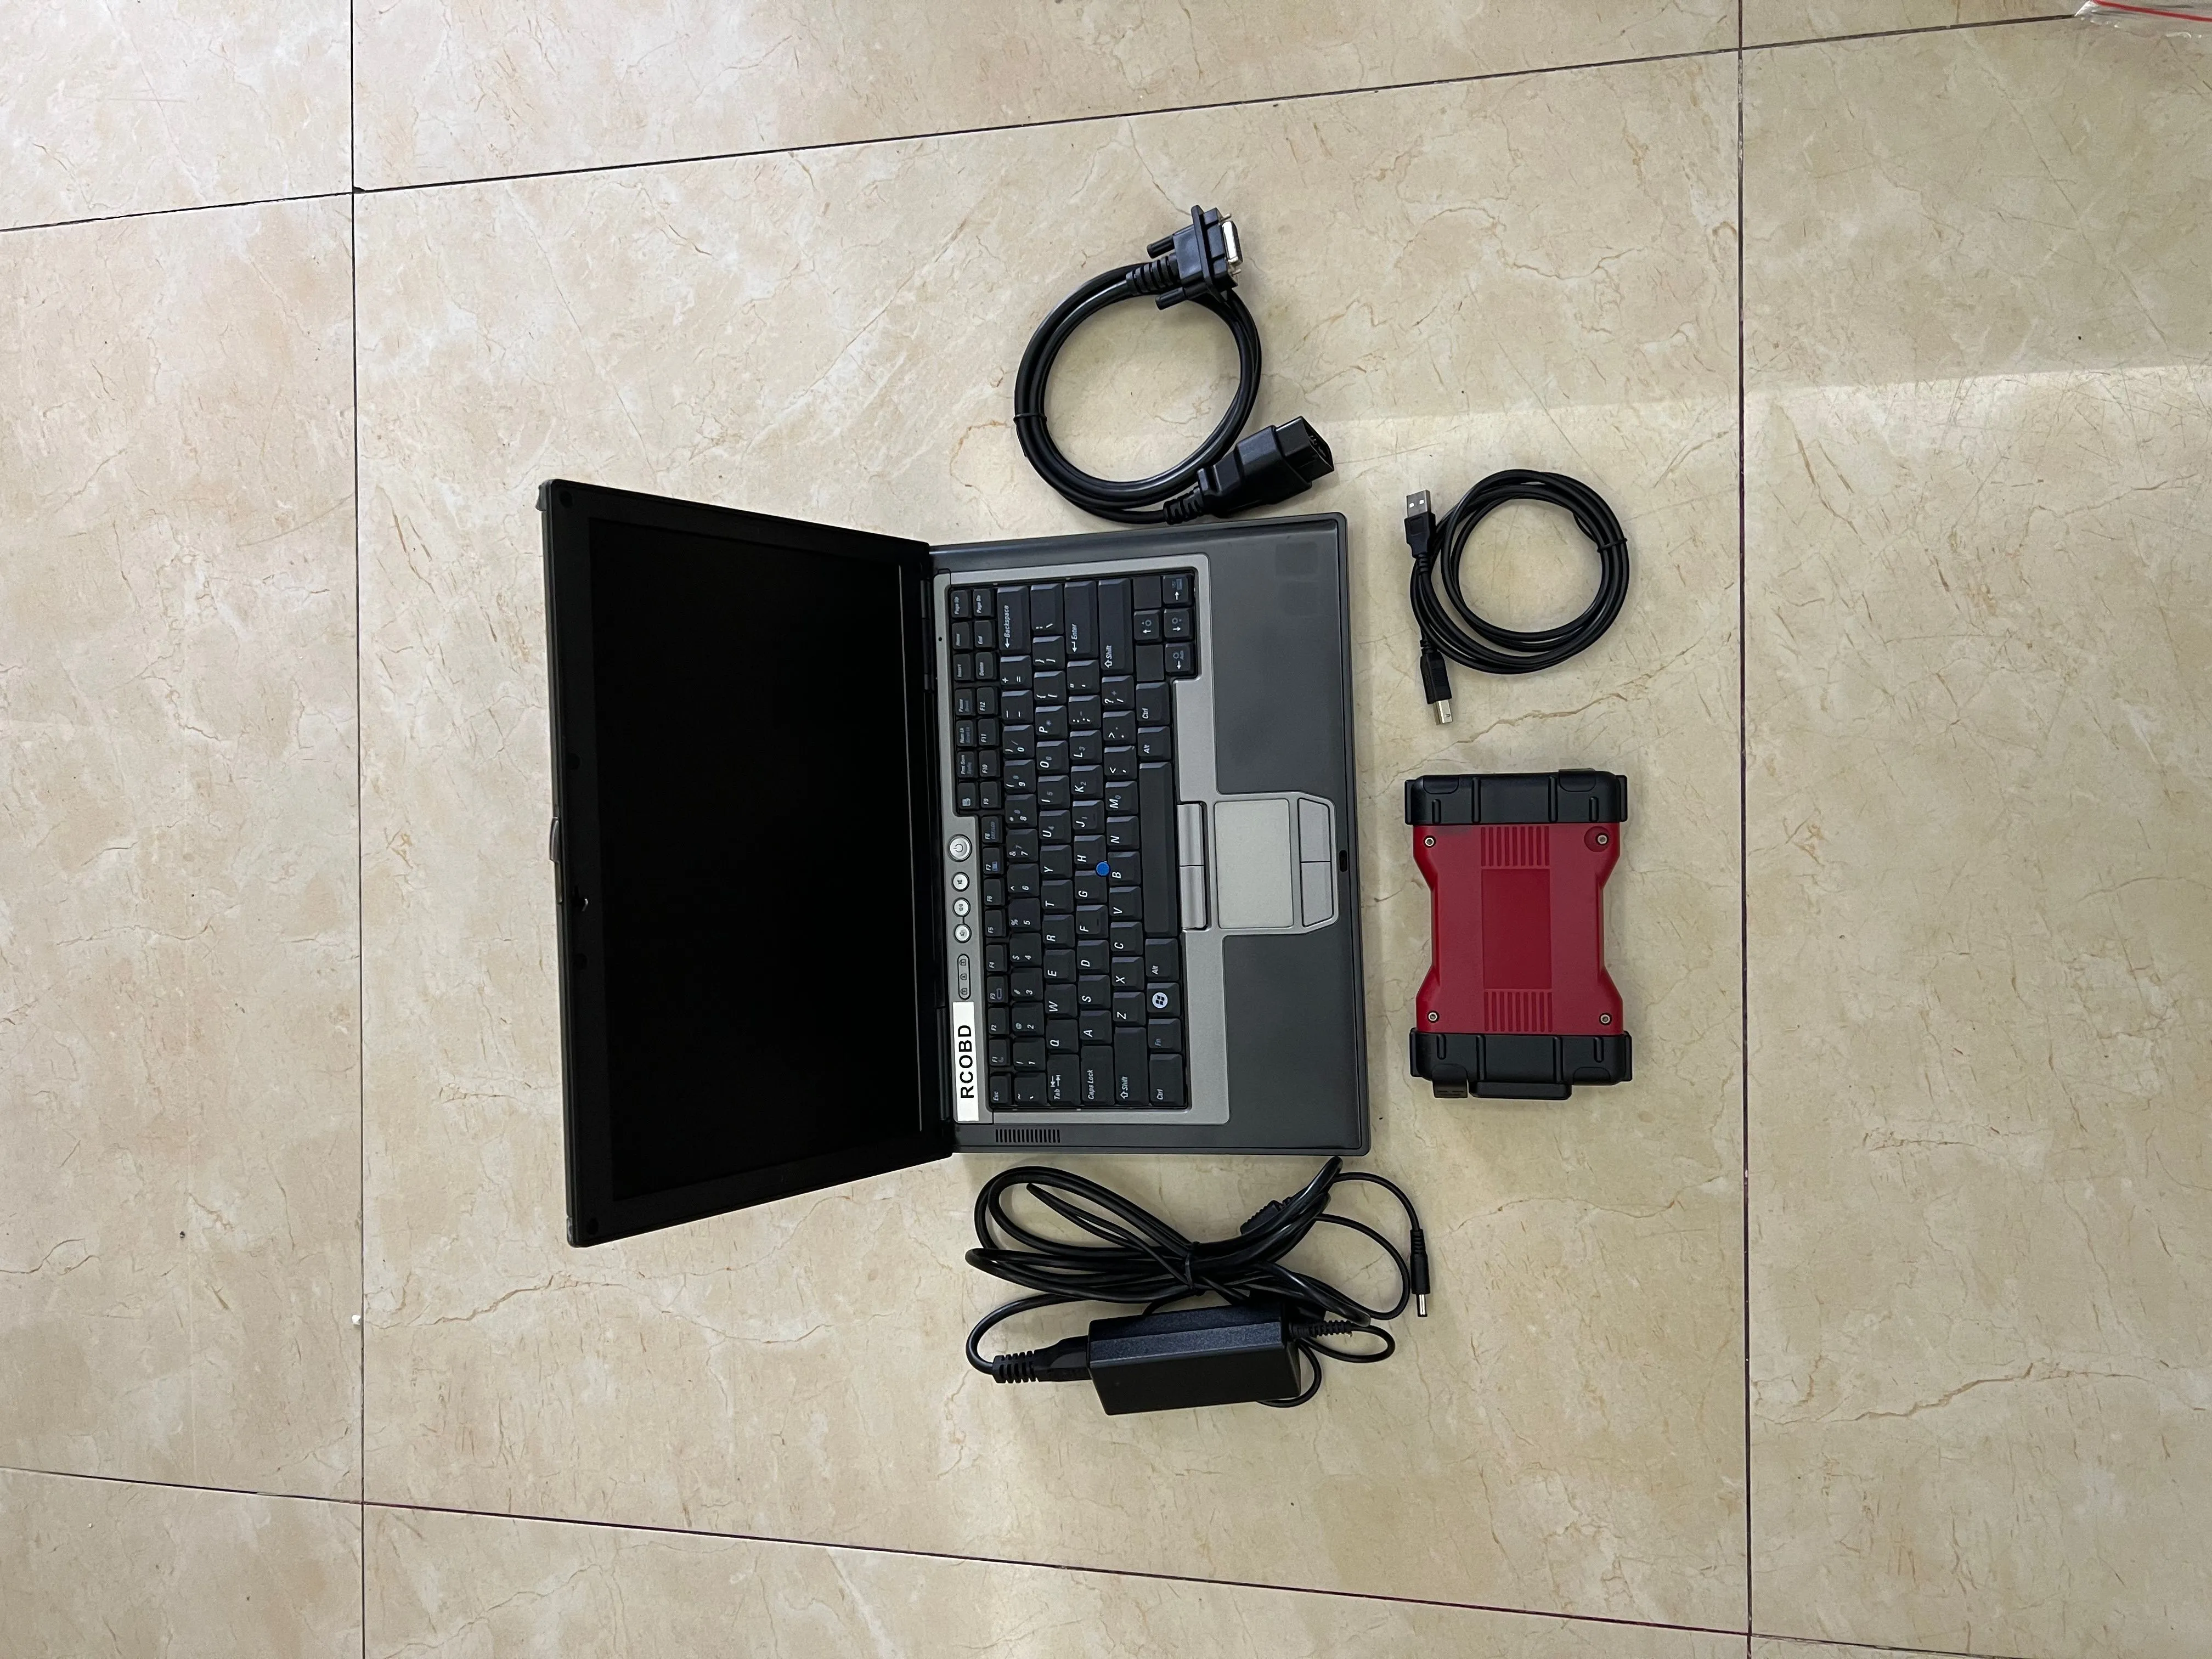 Outil de Diagnostic pour Ford VCM2 Scanner IDS V115 obd2 vcm-2 avec SSD de 360 go dans un ordinateur portable d630, écran tactile 4G prêt à l'emploi